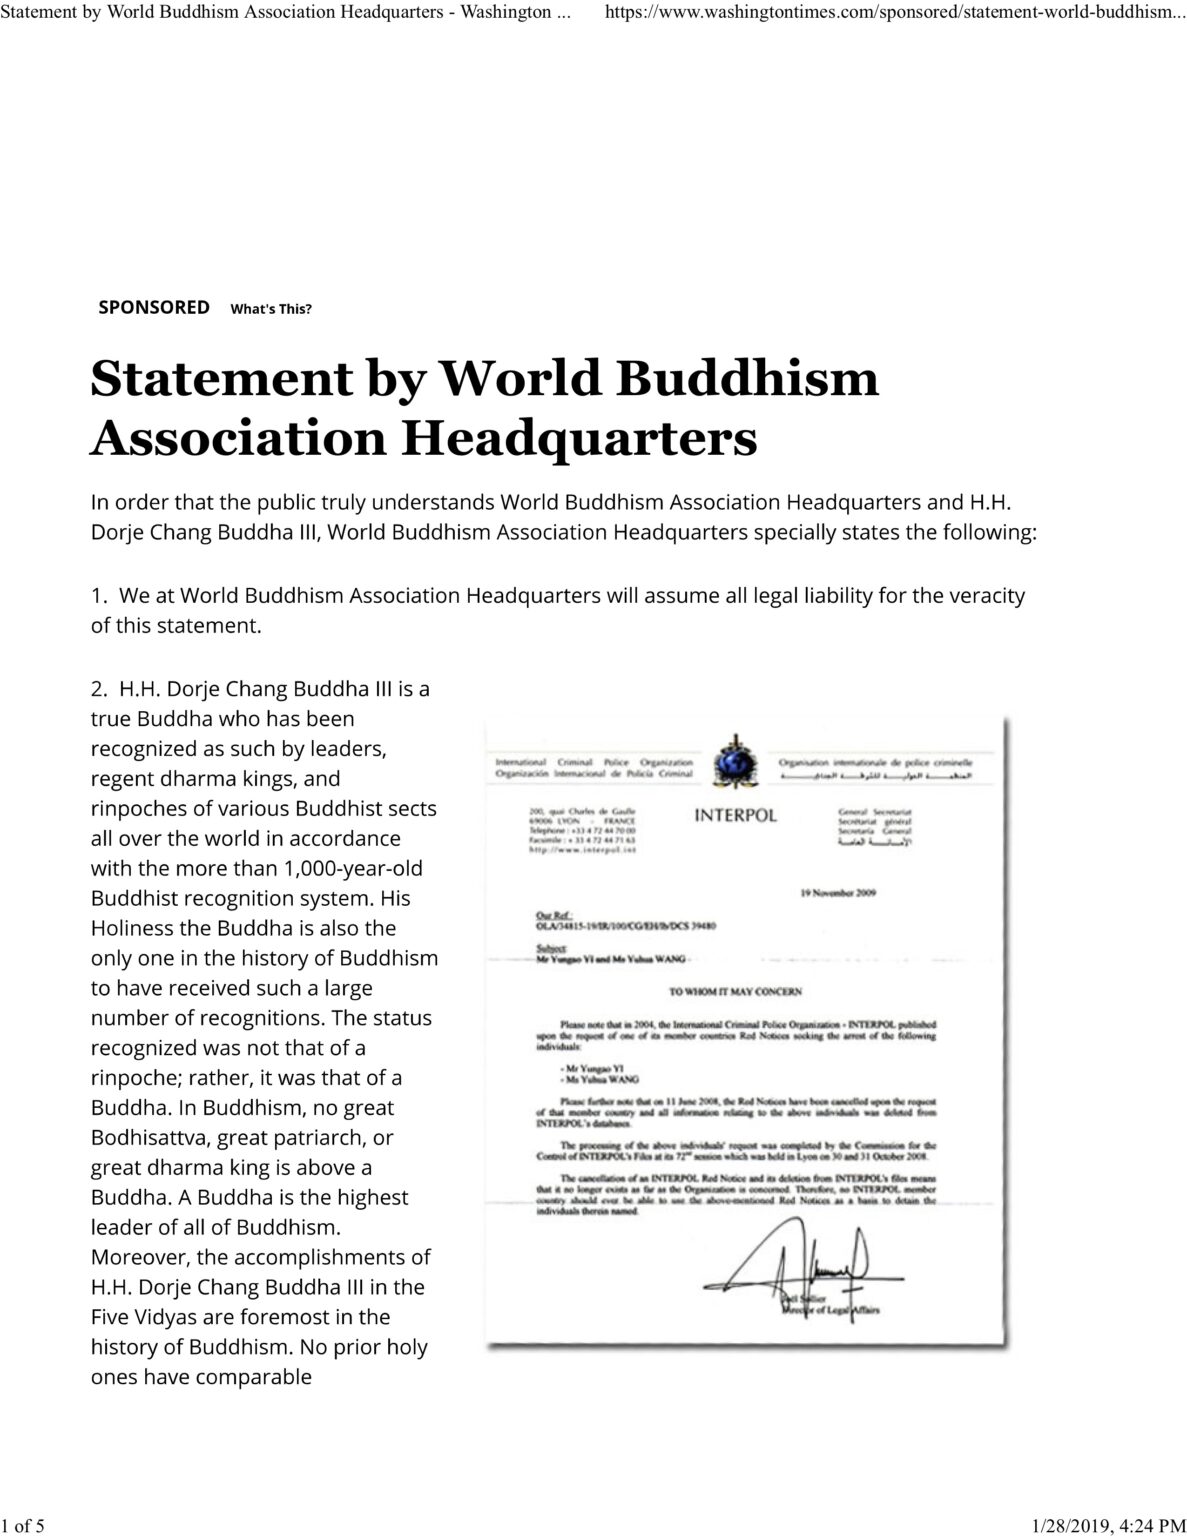 世界佛教總部的聲明